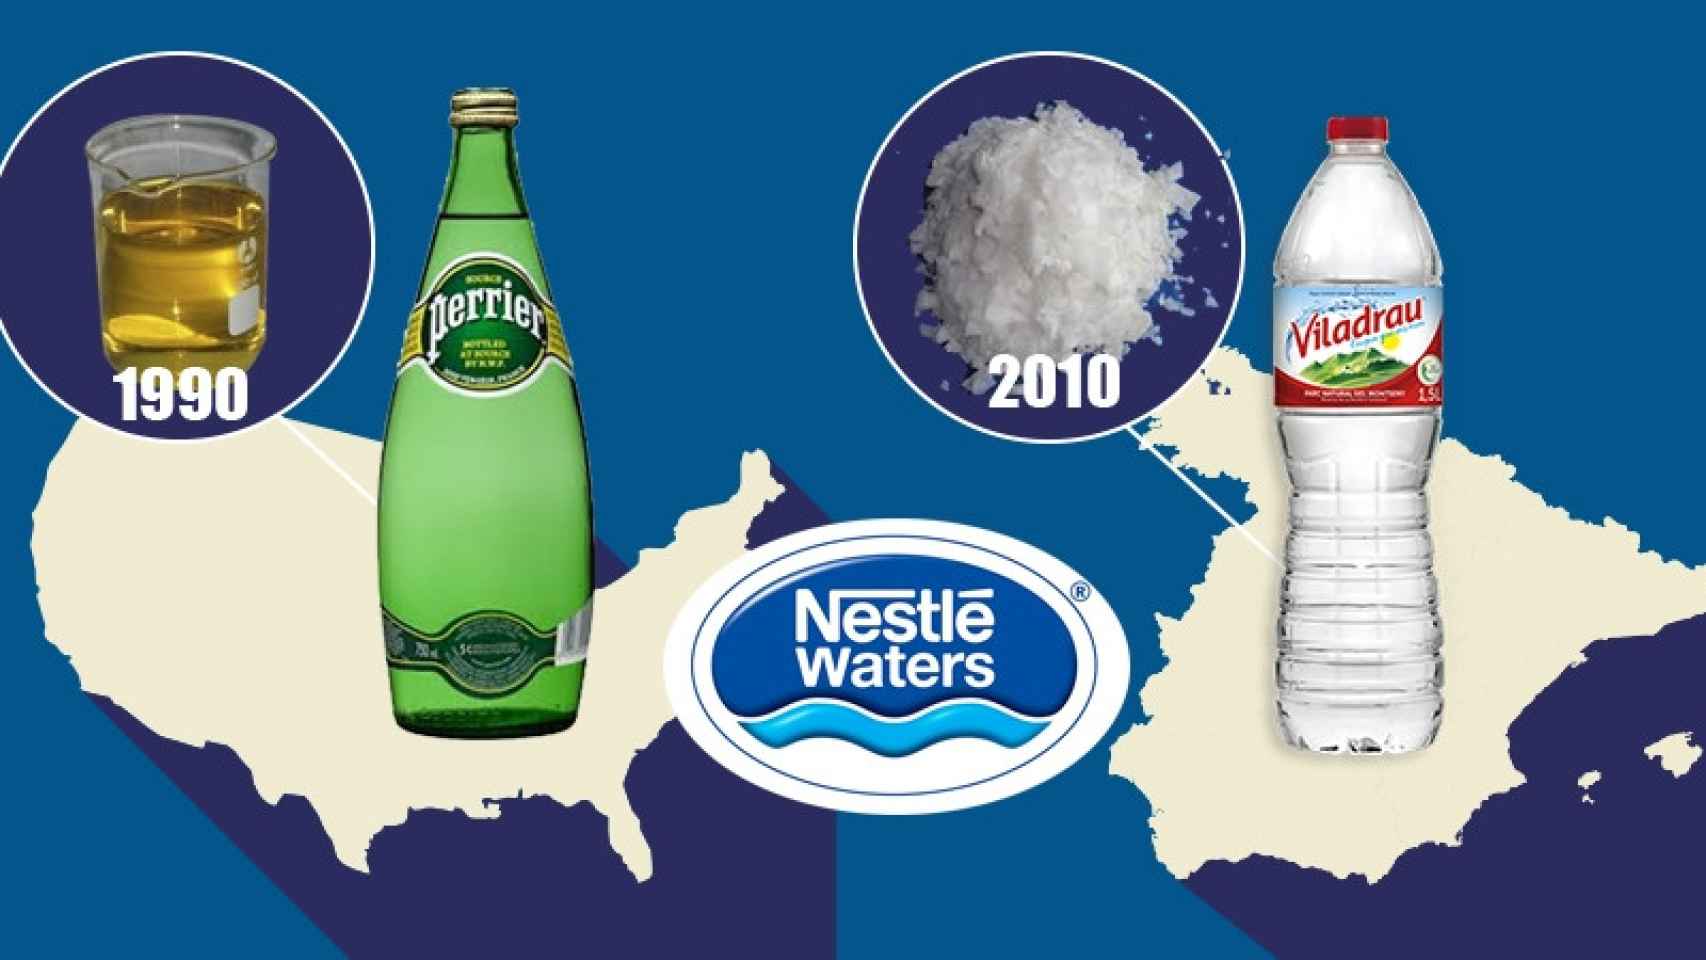 Perrier, en Estados Unidos, y Viladrau, en España, pertenecen a Nestlé / CG